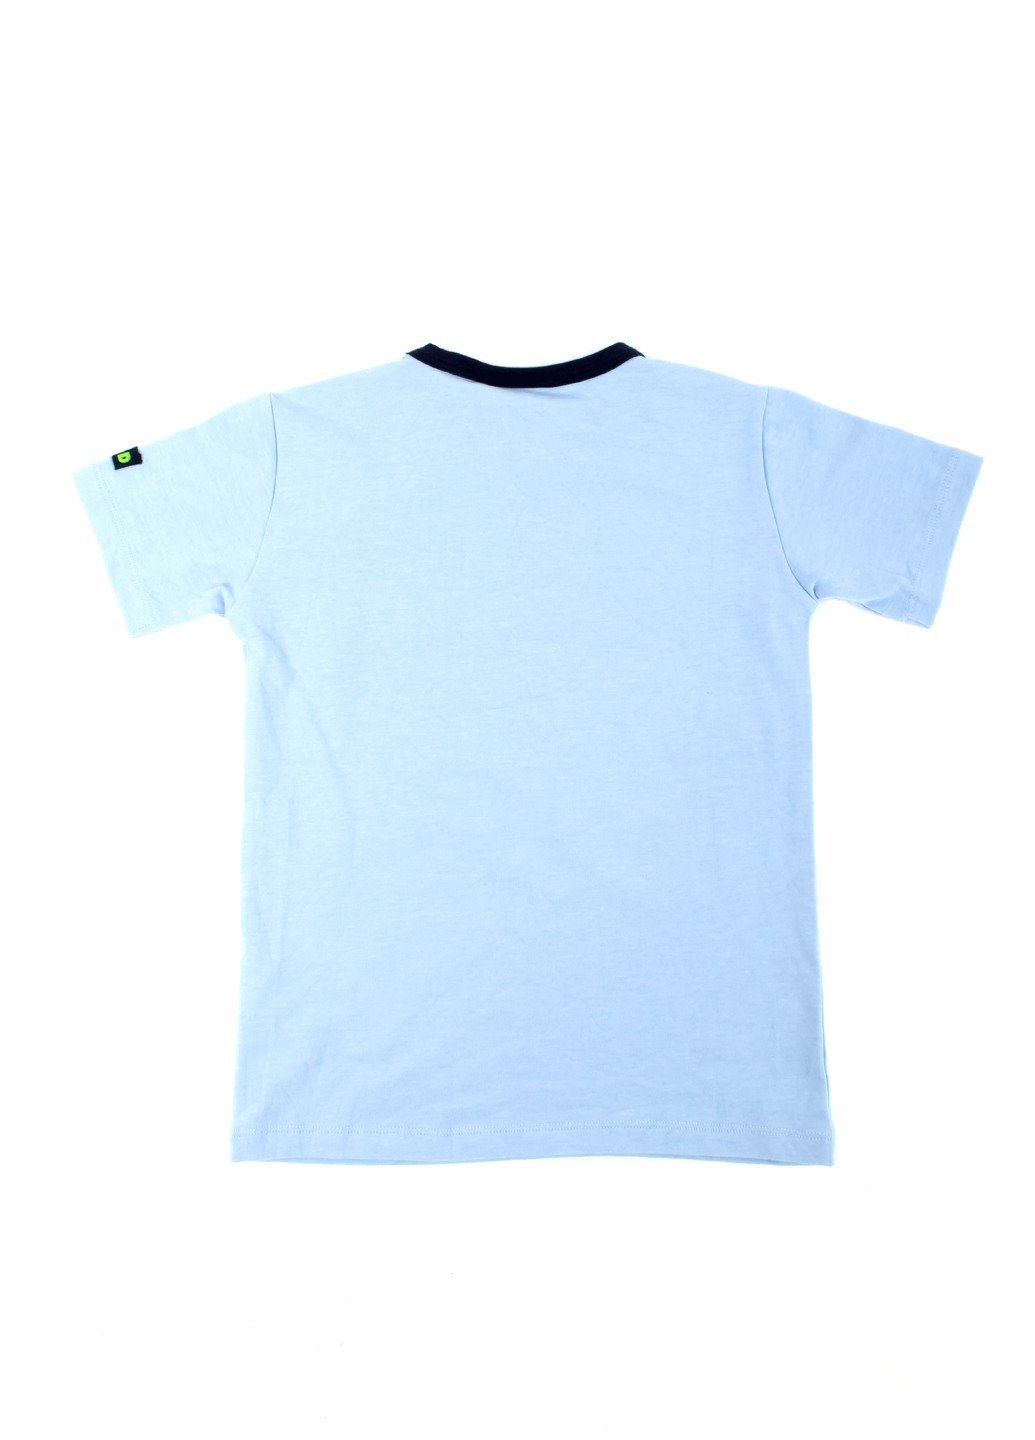 Голубая летняя футболка на мальчика tom-du голубая с принтом 070821-001888 TOM DU